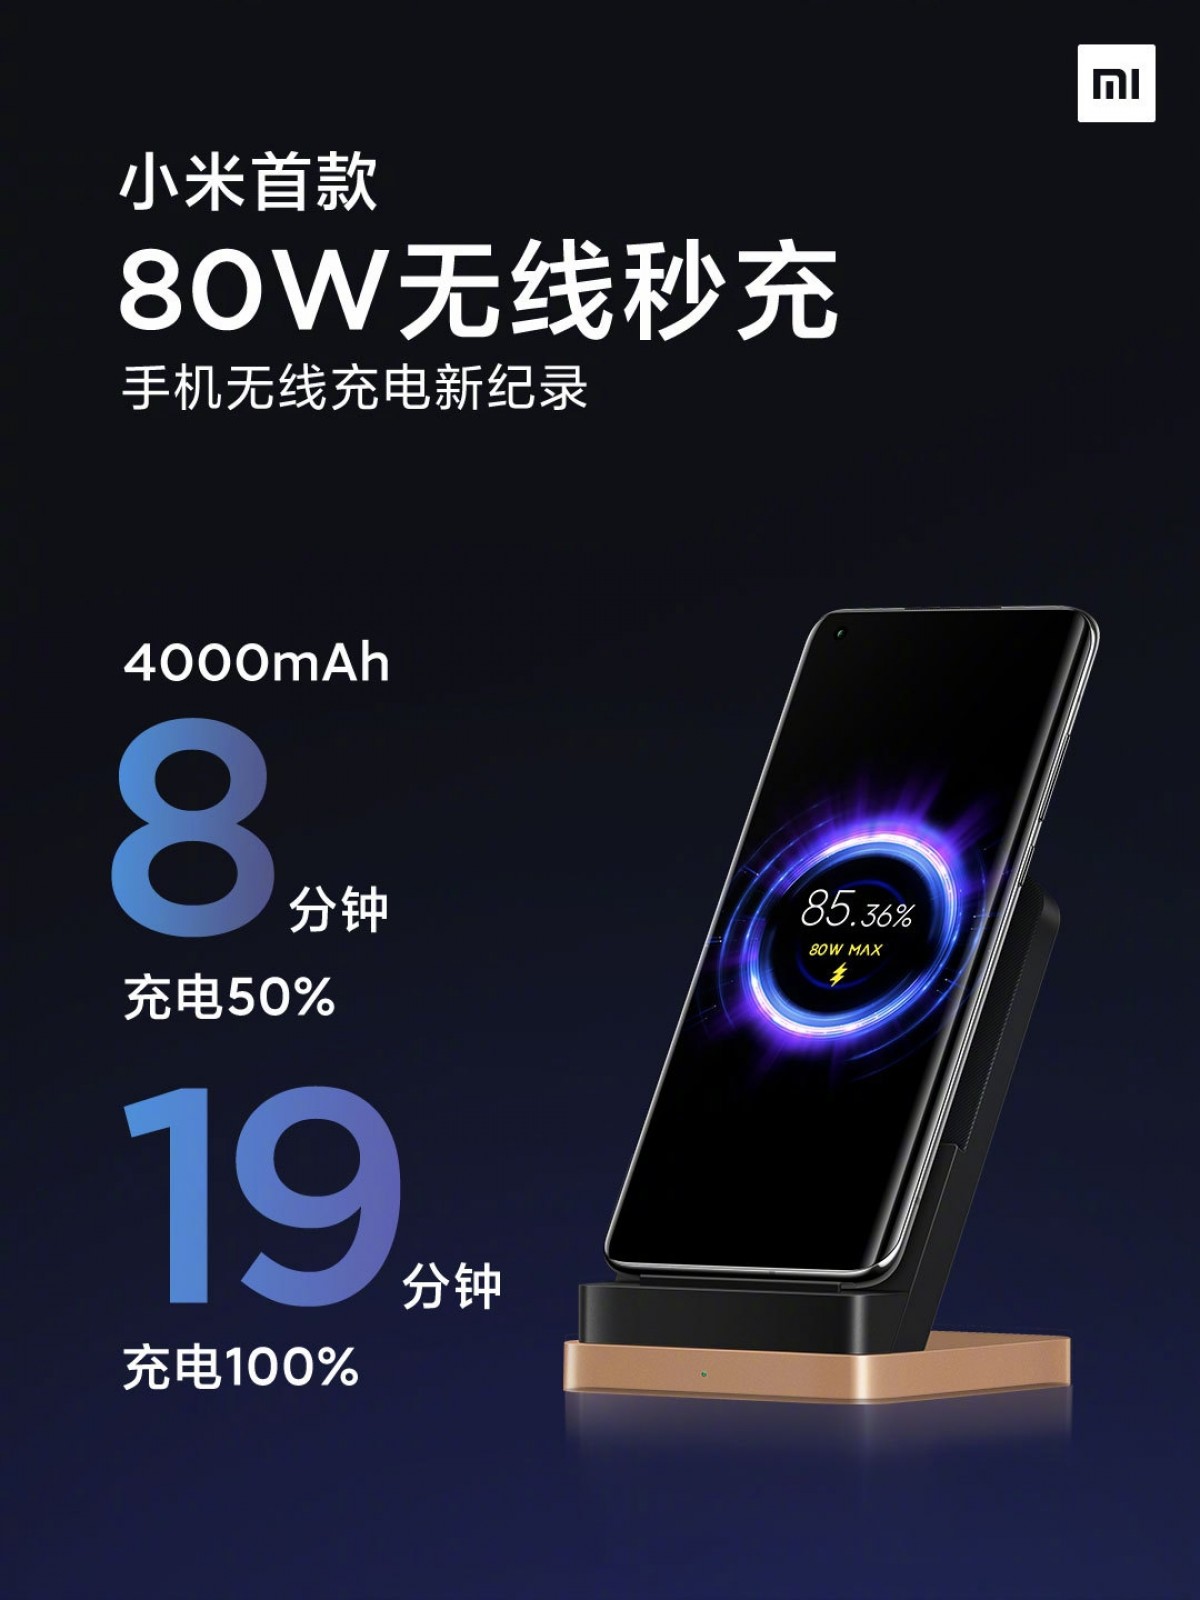 Xiaomi Mi Wireless Charging da 80W